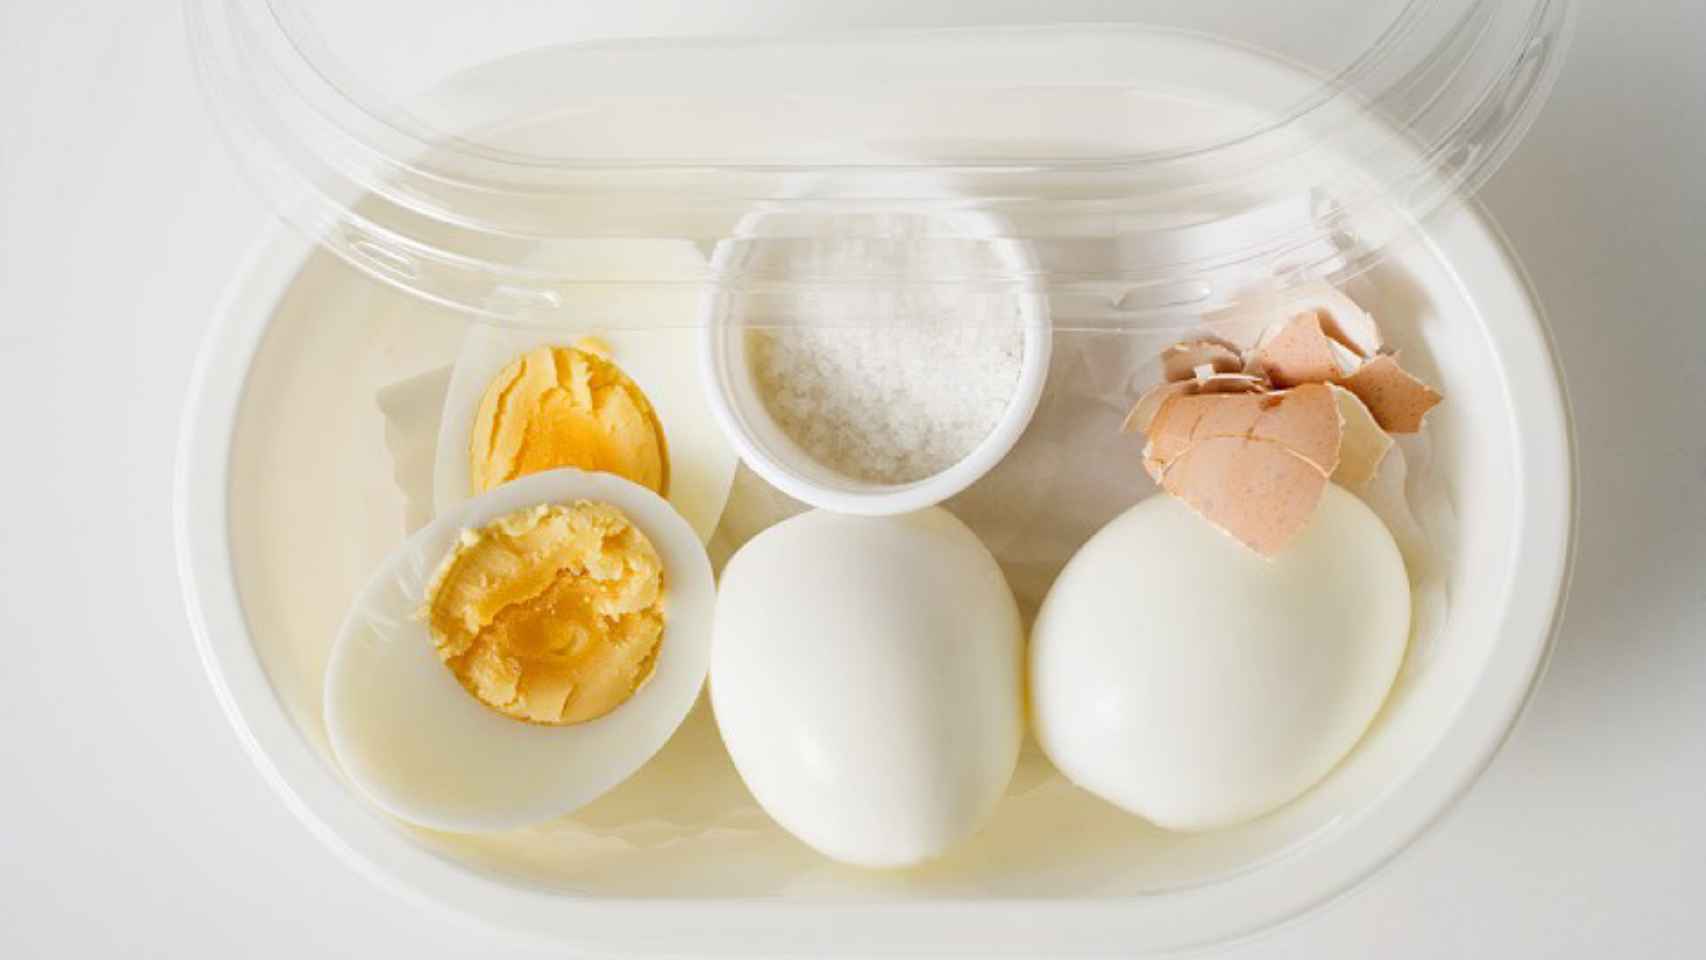 Cocer huevos. Consejos para un huevo cocido perfecto.